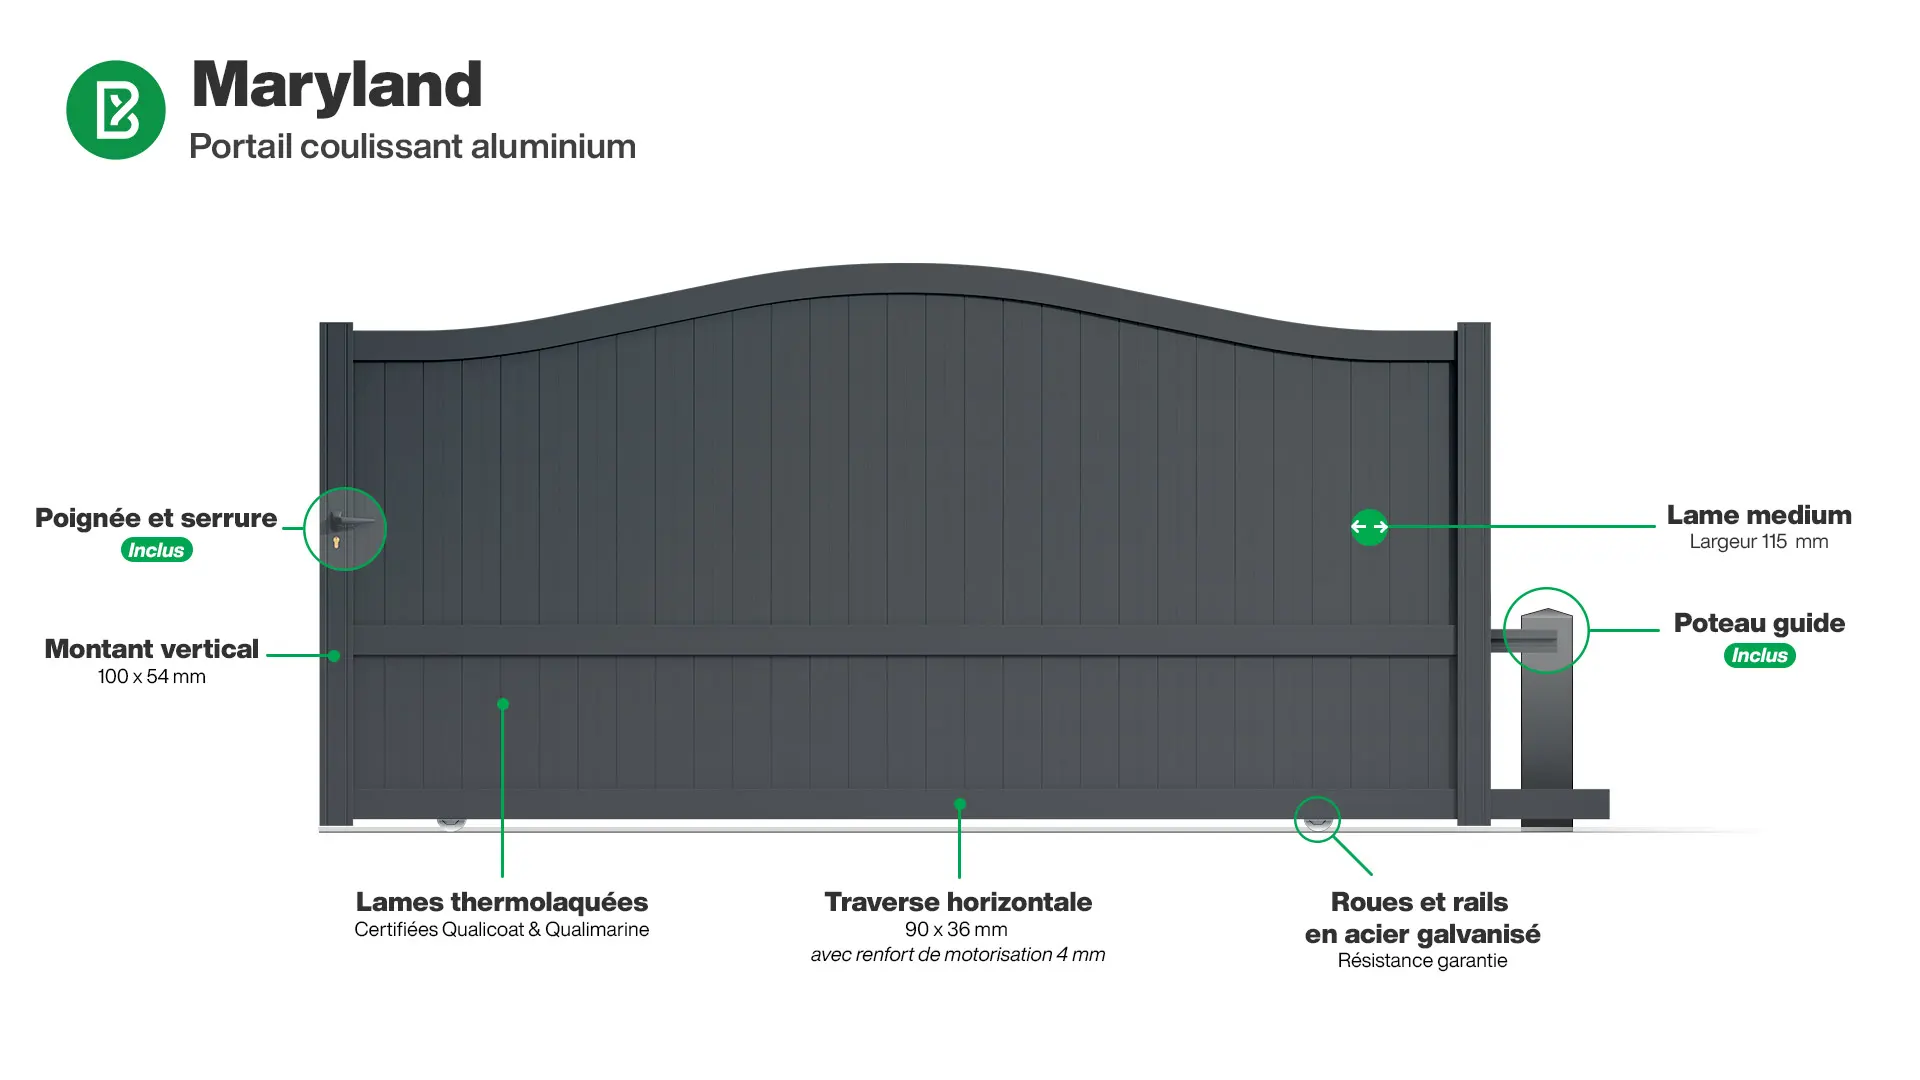 Portail : Infographie d'un portail coulissant aluminium modèle MARYLAND